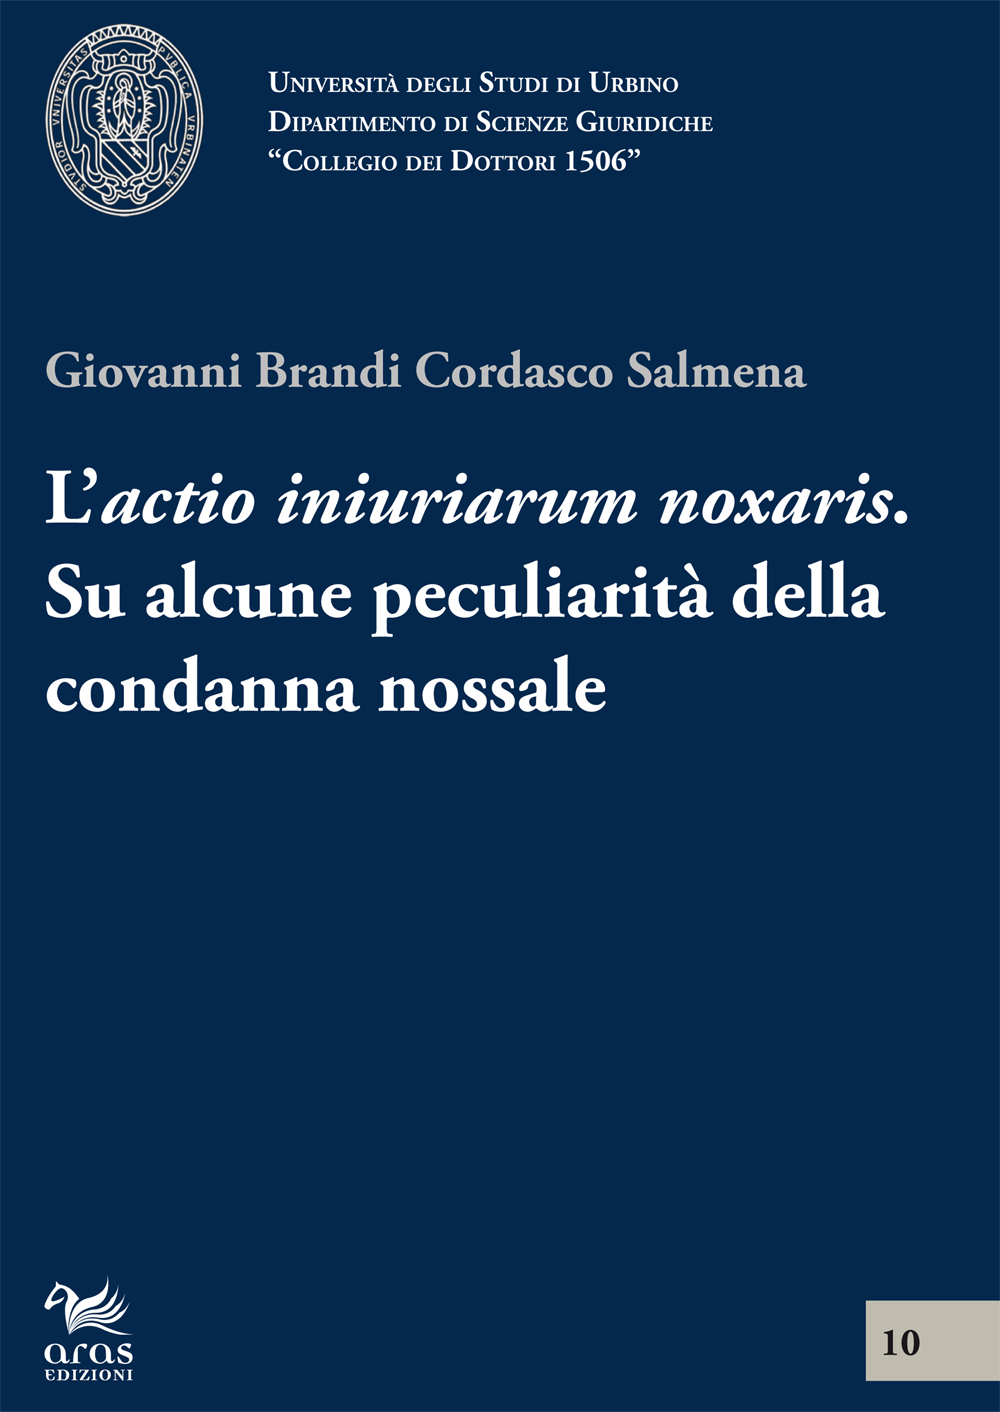 eBook, L'actio inuriarium noxalis : su alcune peculiarità della condanna nossale, Aras